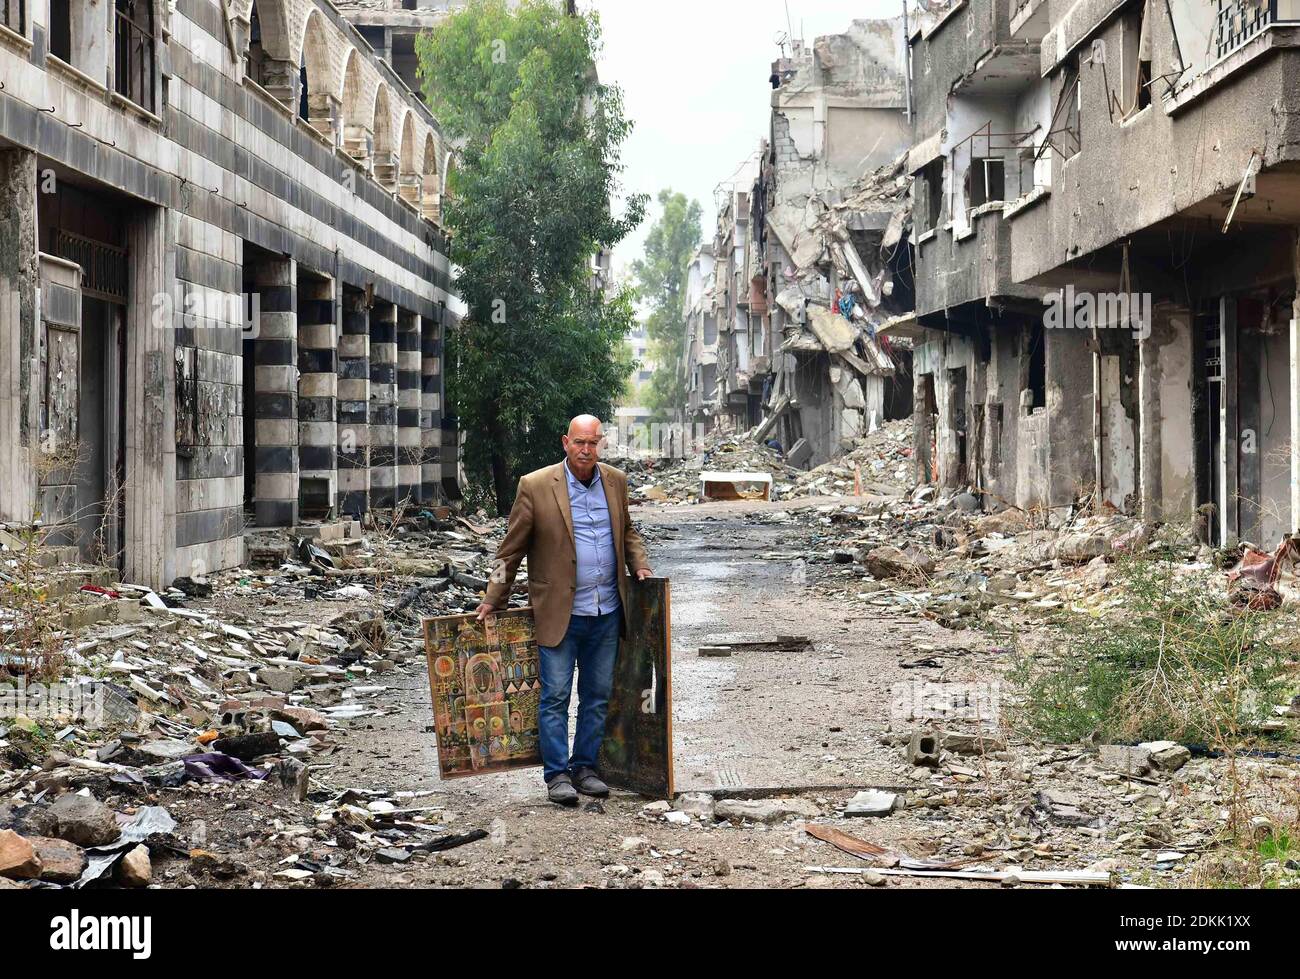 Campamento de Yarmouk, Siria. 26 de noviembre de 2020. El artista palestino Mohammad al-Rakoui lleva pinturas en el campamento de Yarmouk en el sur de Damasco, Siria, el 26 de noviembre de 2020. Al igual que un paramédico que buscaba supervivientes atrapados bajo los escombros, Mohammad al-Rakoui estaba buscando pinturas enterradas en los escombros de su estudio devastado en el campamento de Yarmouk, devastado por la guerra. Crédito: Ammar Safarjalani/Xinhua/Alamy Live News Foto de stock